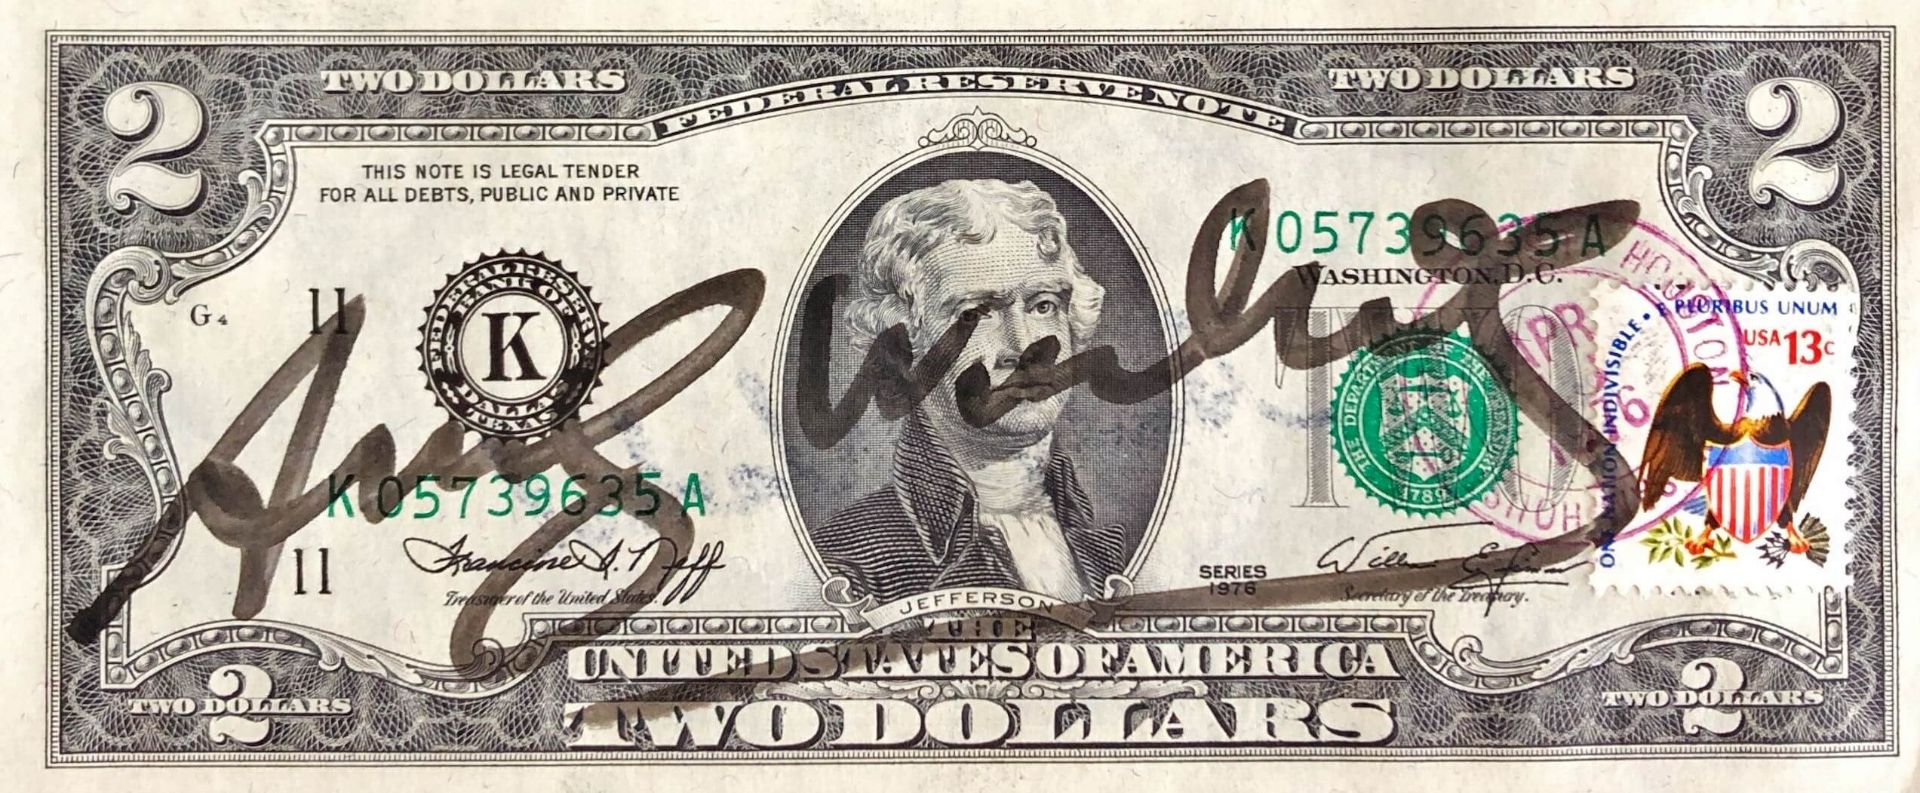 Andy Warhol (1928-1987), 2 Dollar Schein |Andy Warhol (1928-1987), Two Dollar Bill